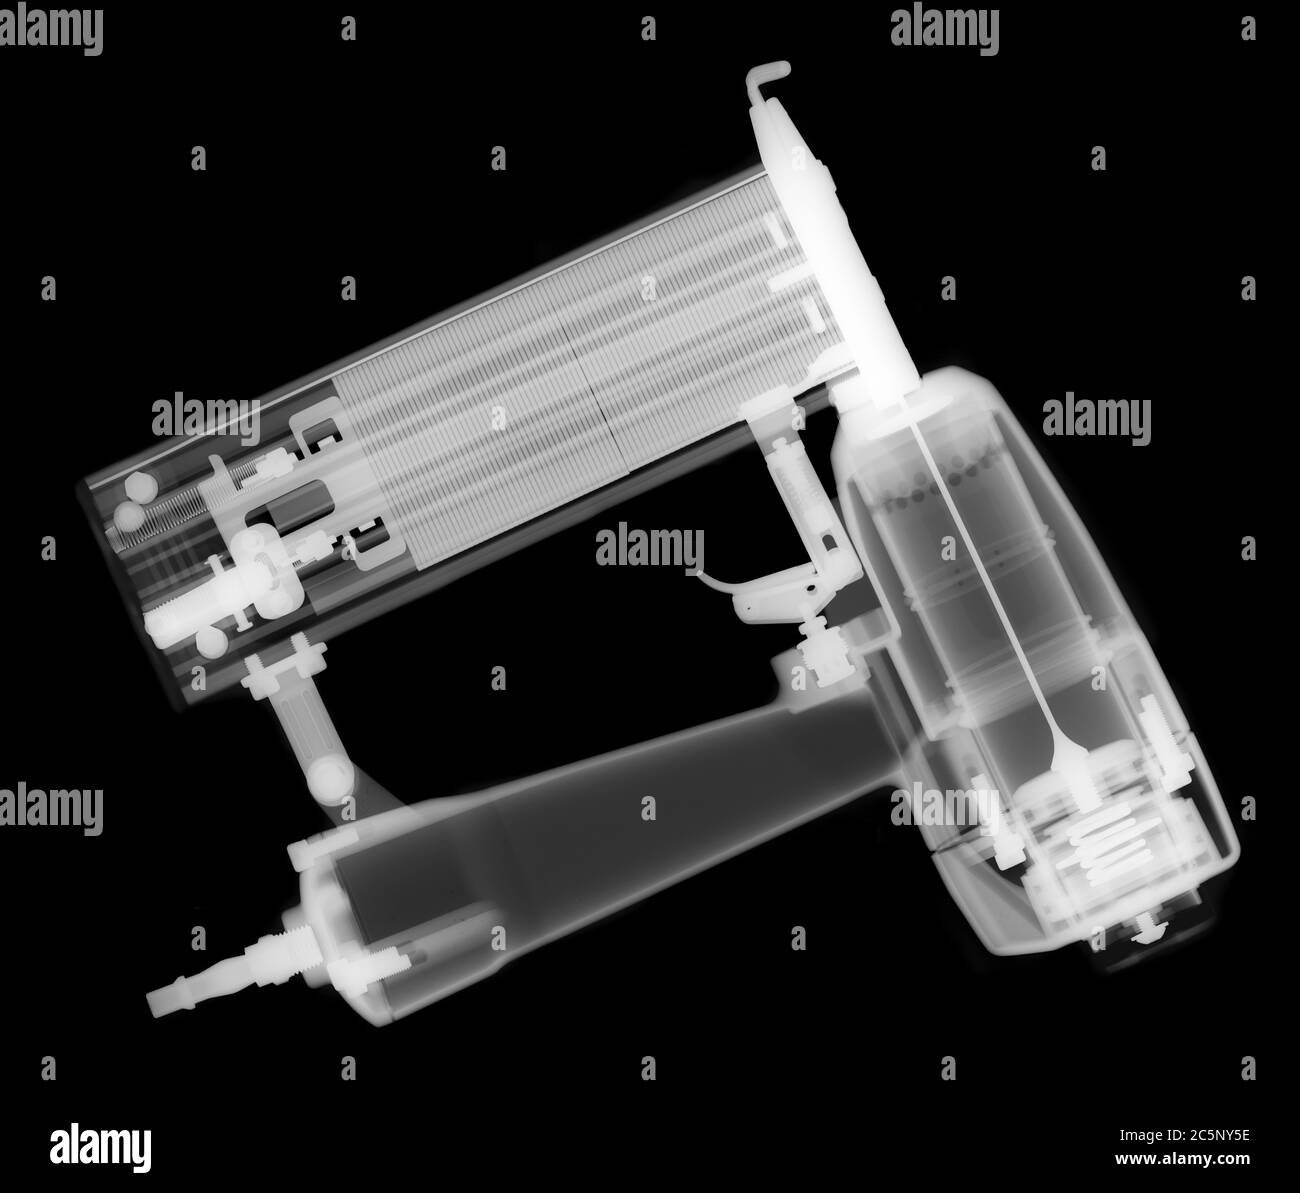 Small nail gun, X-ray. Stock Photo